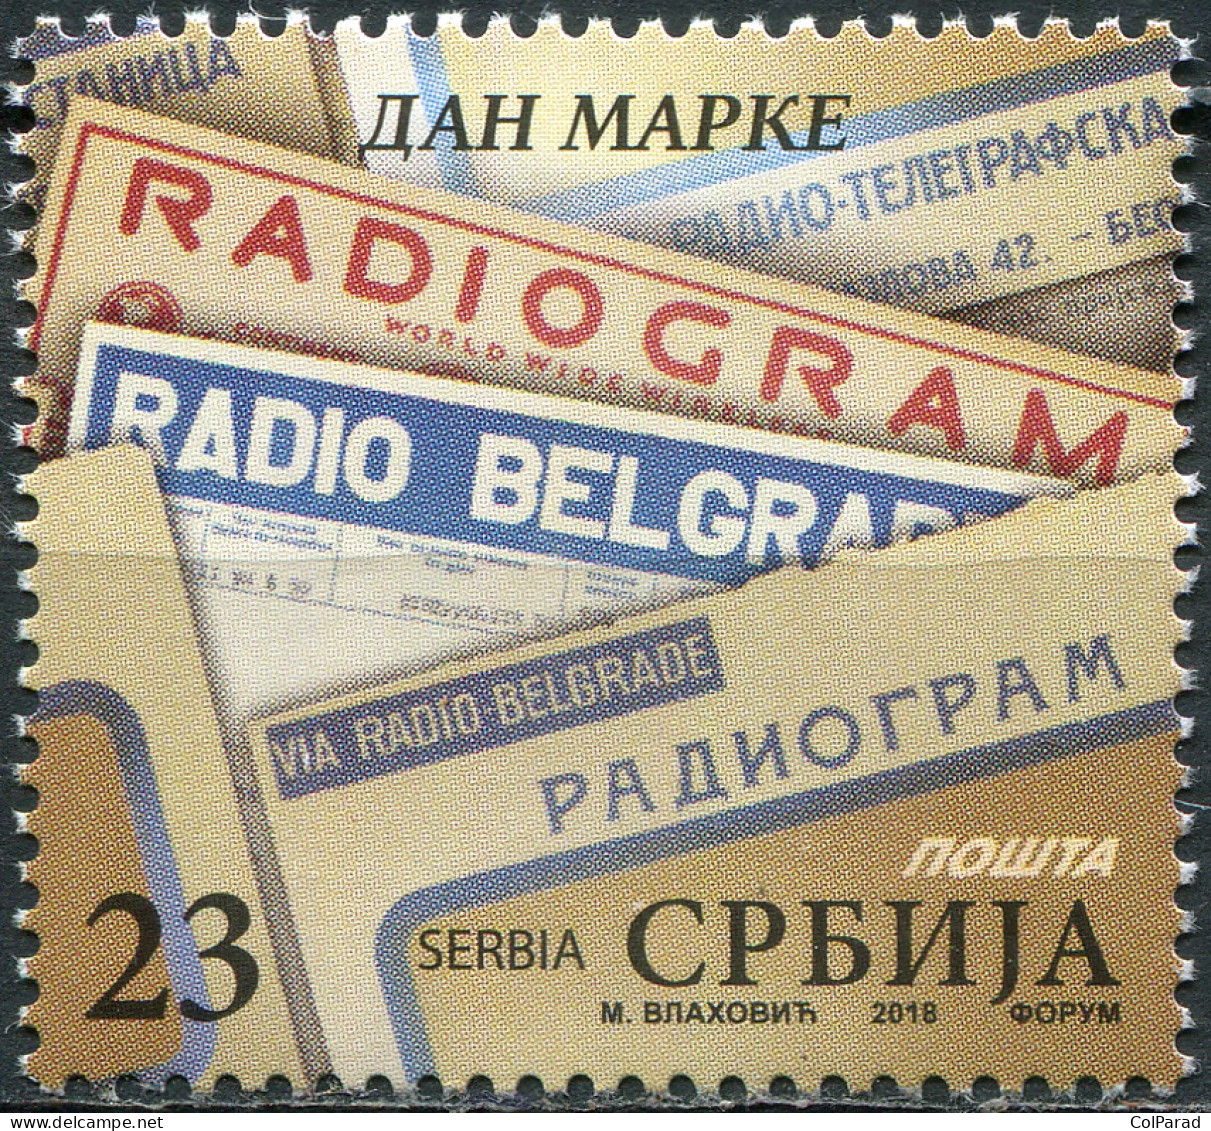 SERBIA - 2018 - STAMP MNH ** - Stamp Day - Serbia